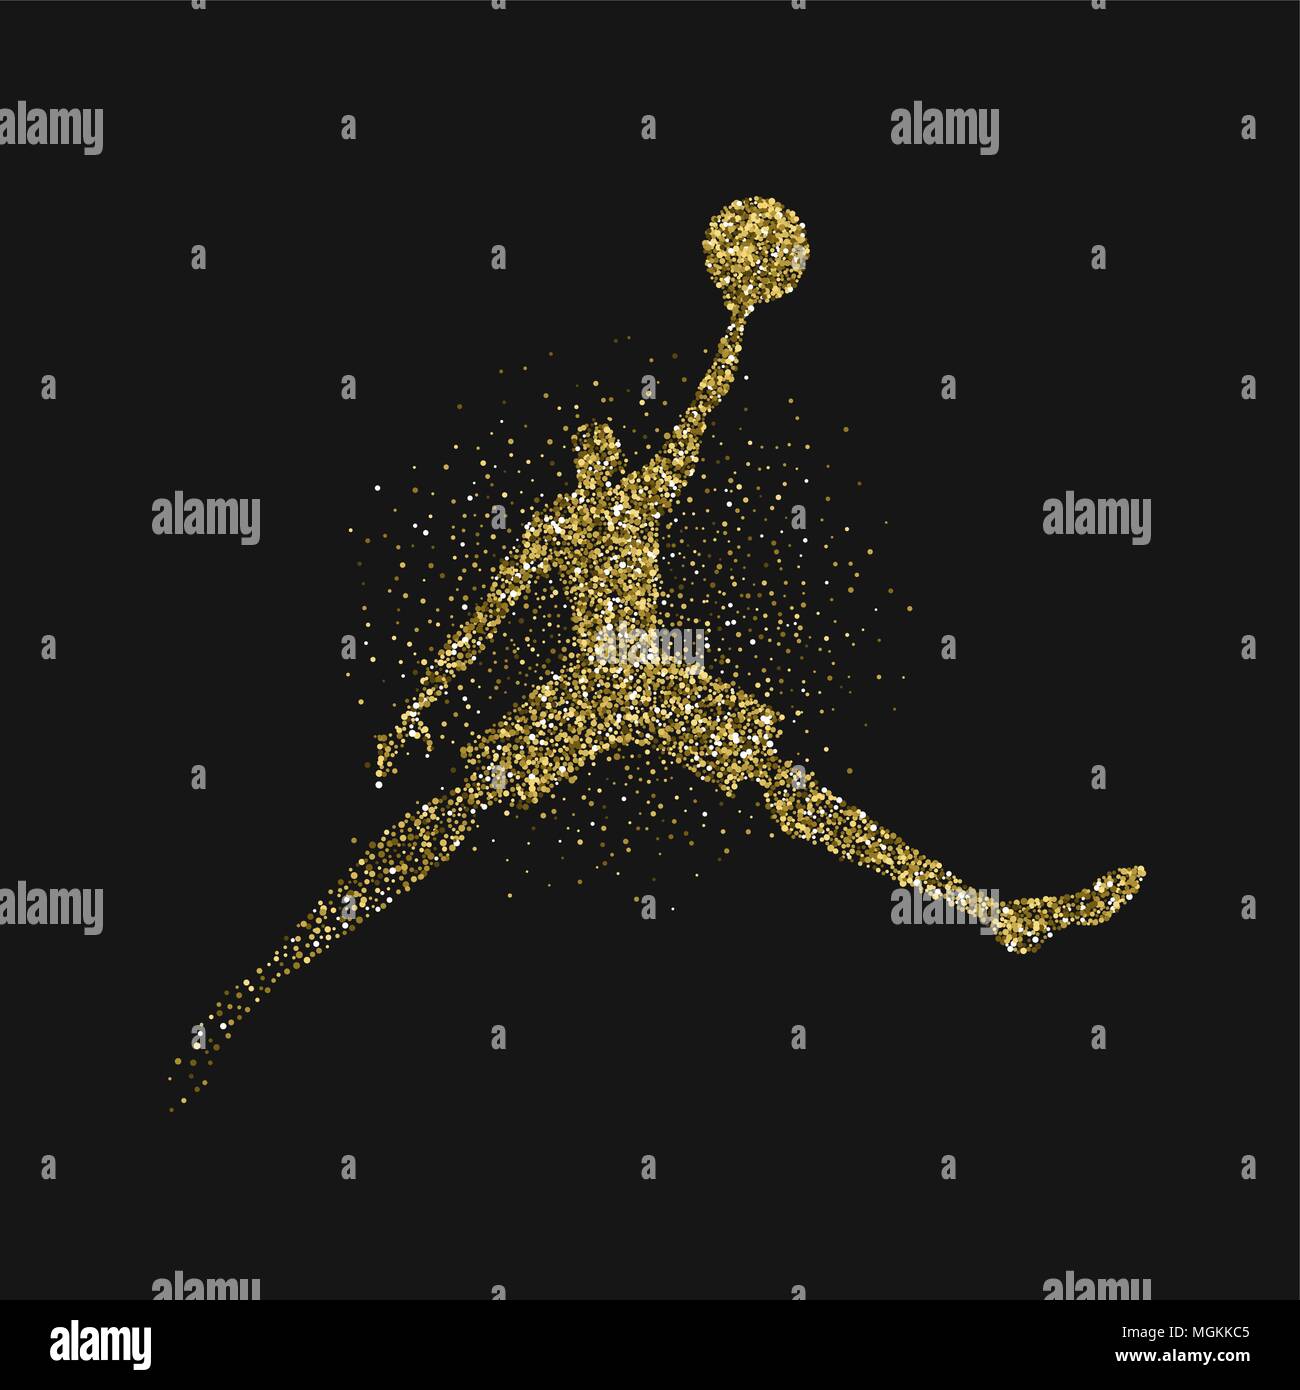 Basketball Spieler springen Silhouette gold glitzer Staub splash über schwarzen Hintergrund. Goldene Farbe Athlet Mann springen mit Basketball. EPS 10 ve Stock Vektor